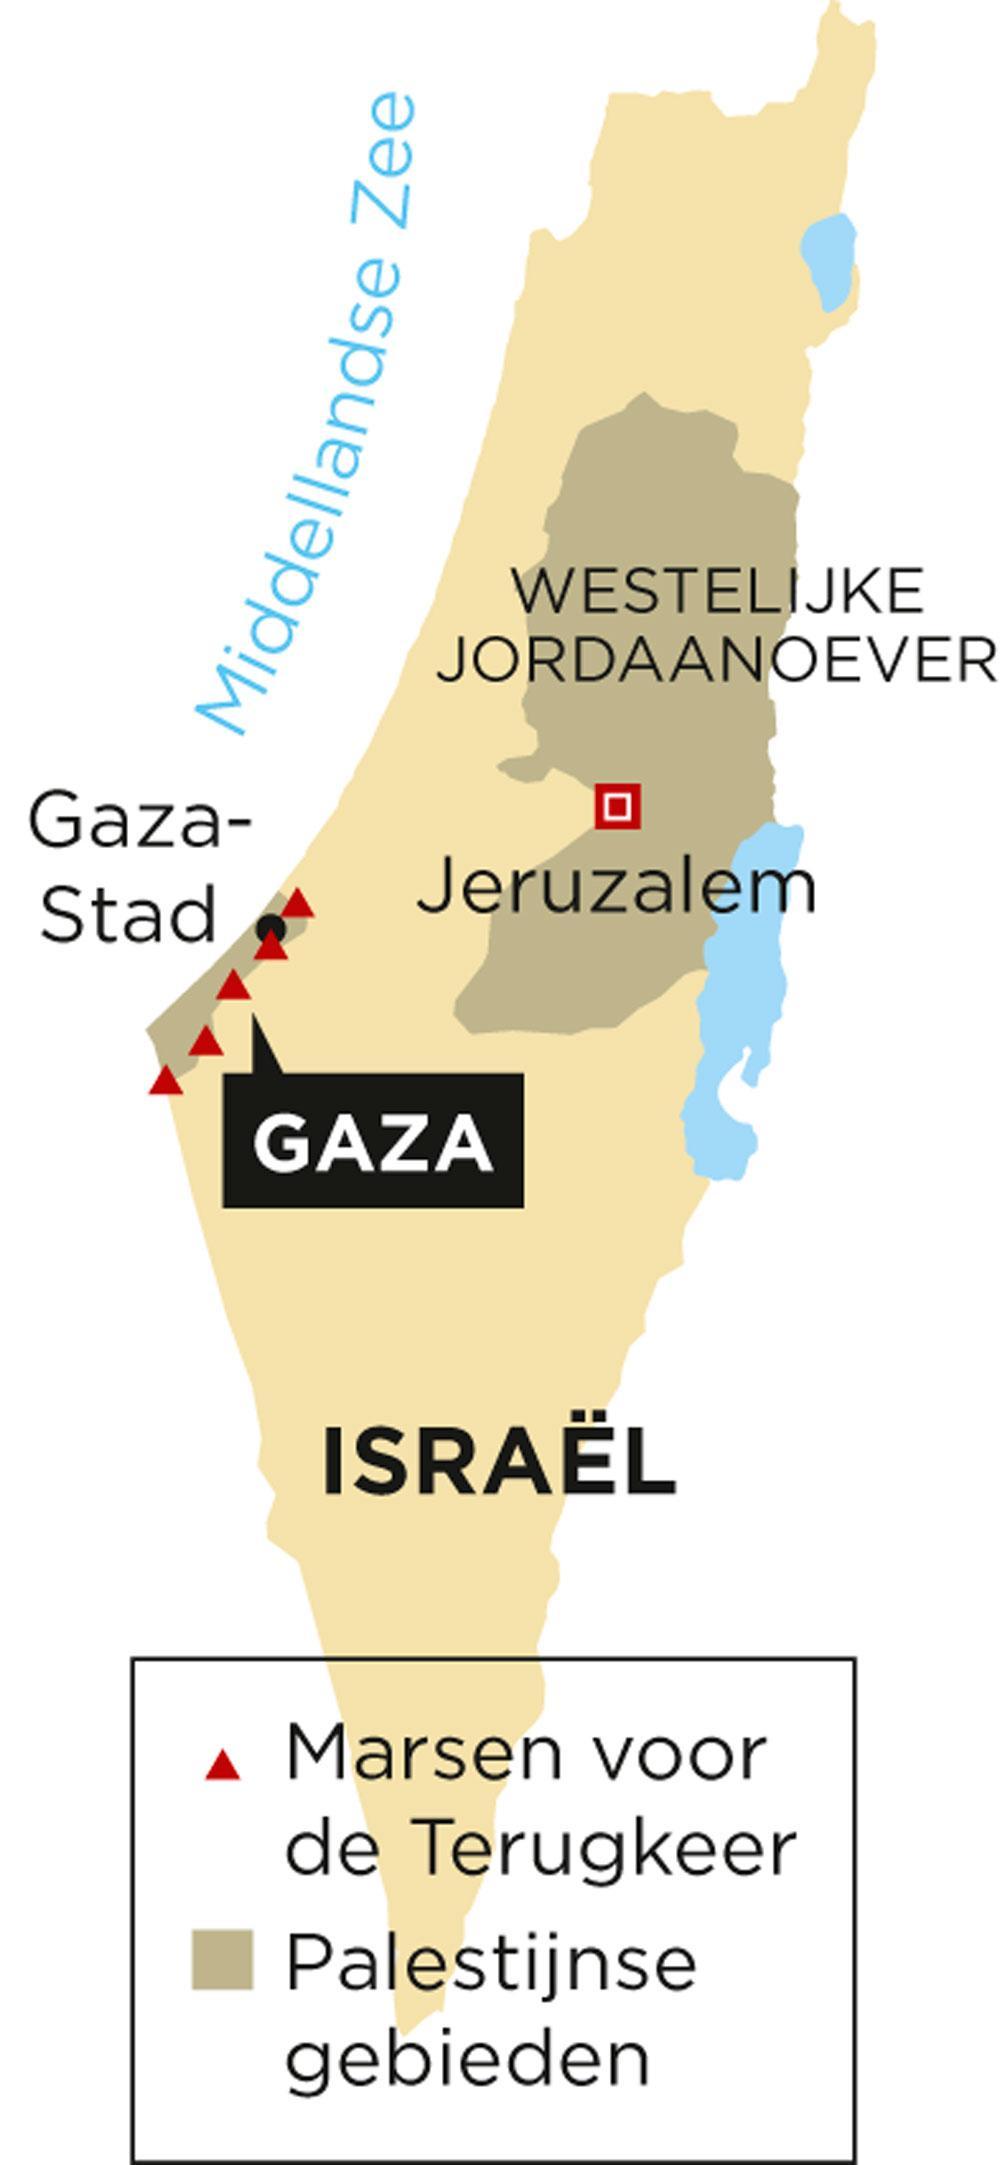 Palestijnen herdenken 70 jaar Nakba: 'God zal ons beschermen tegen de kogels van Israël'